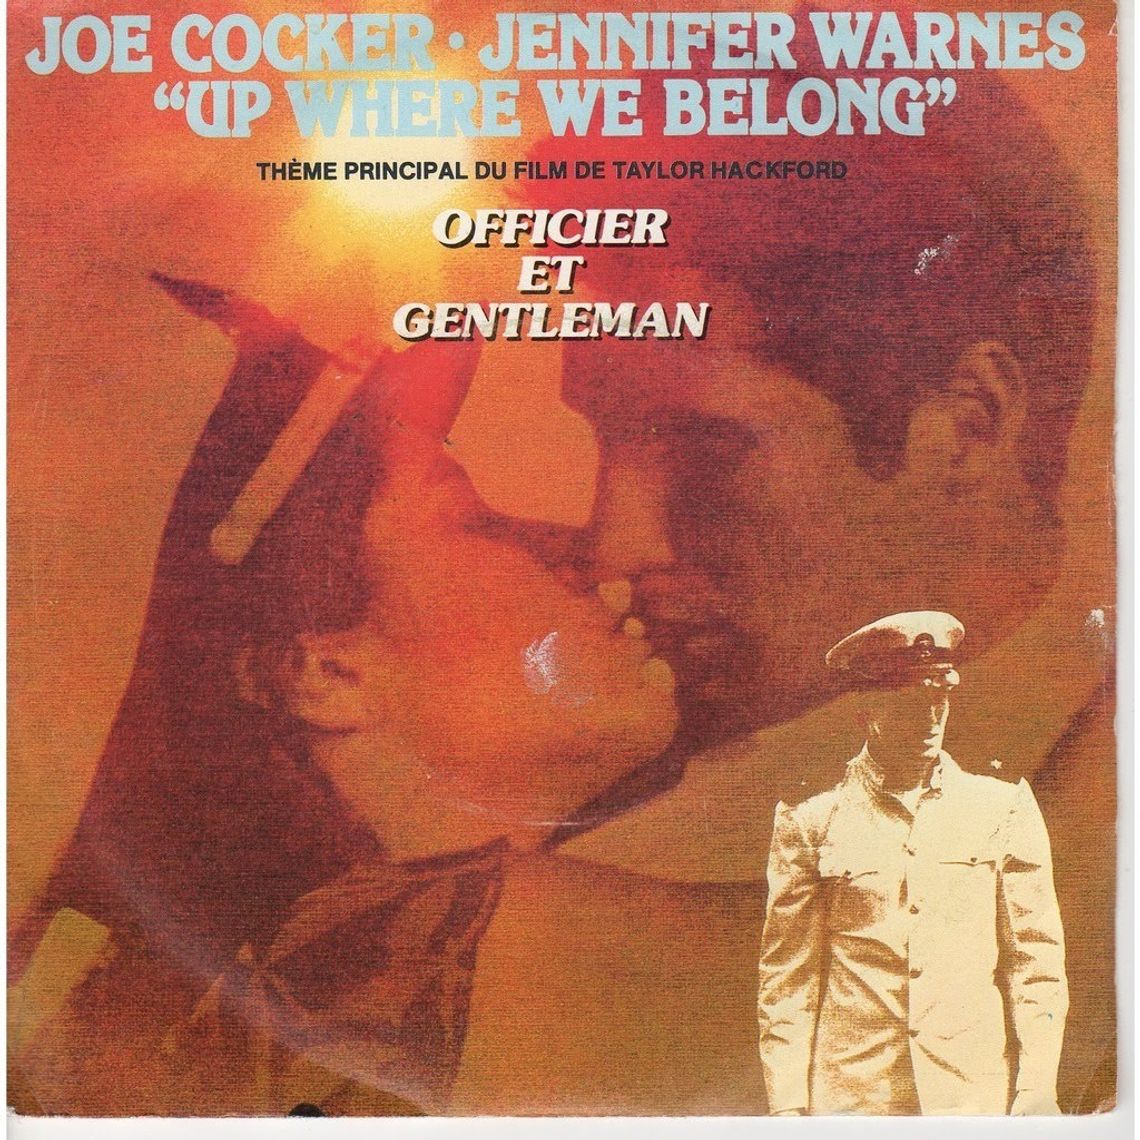 Joe Cocker & Jennifer Warnes "Up where we belong"